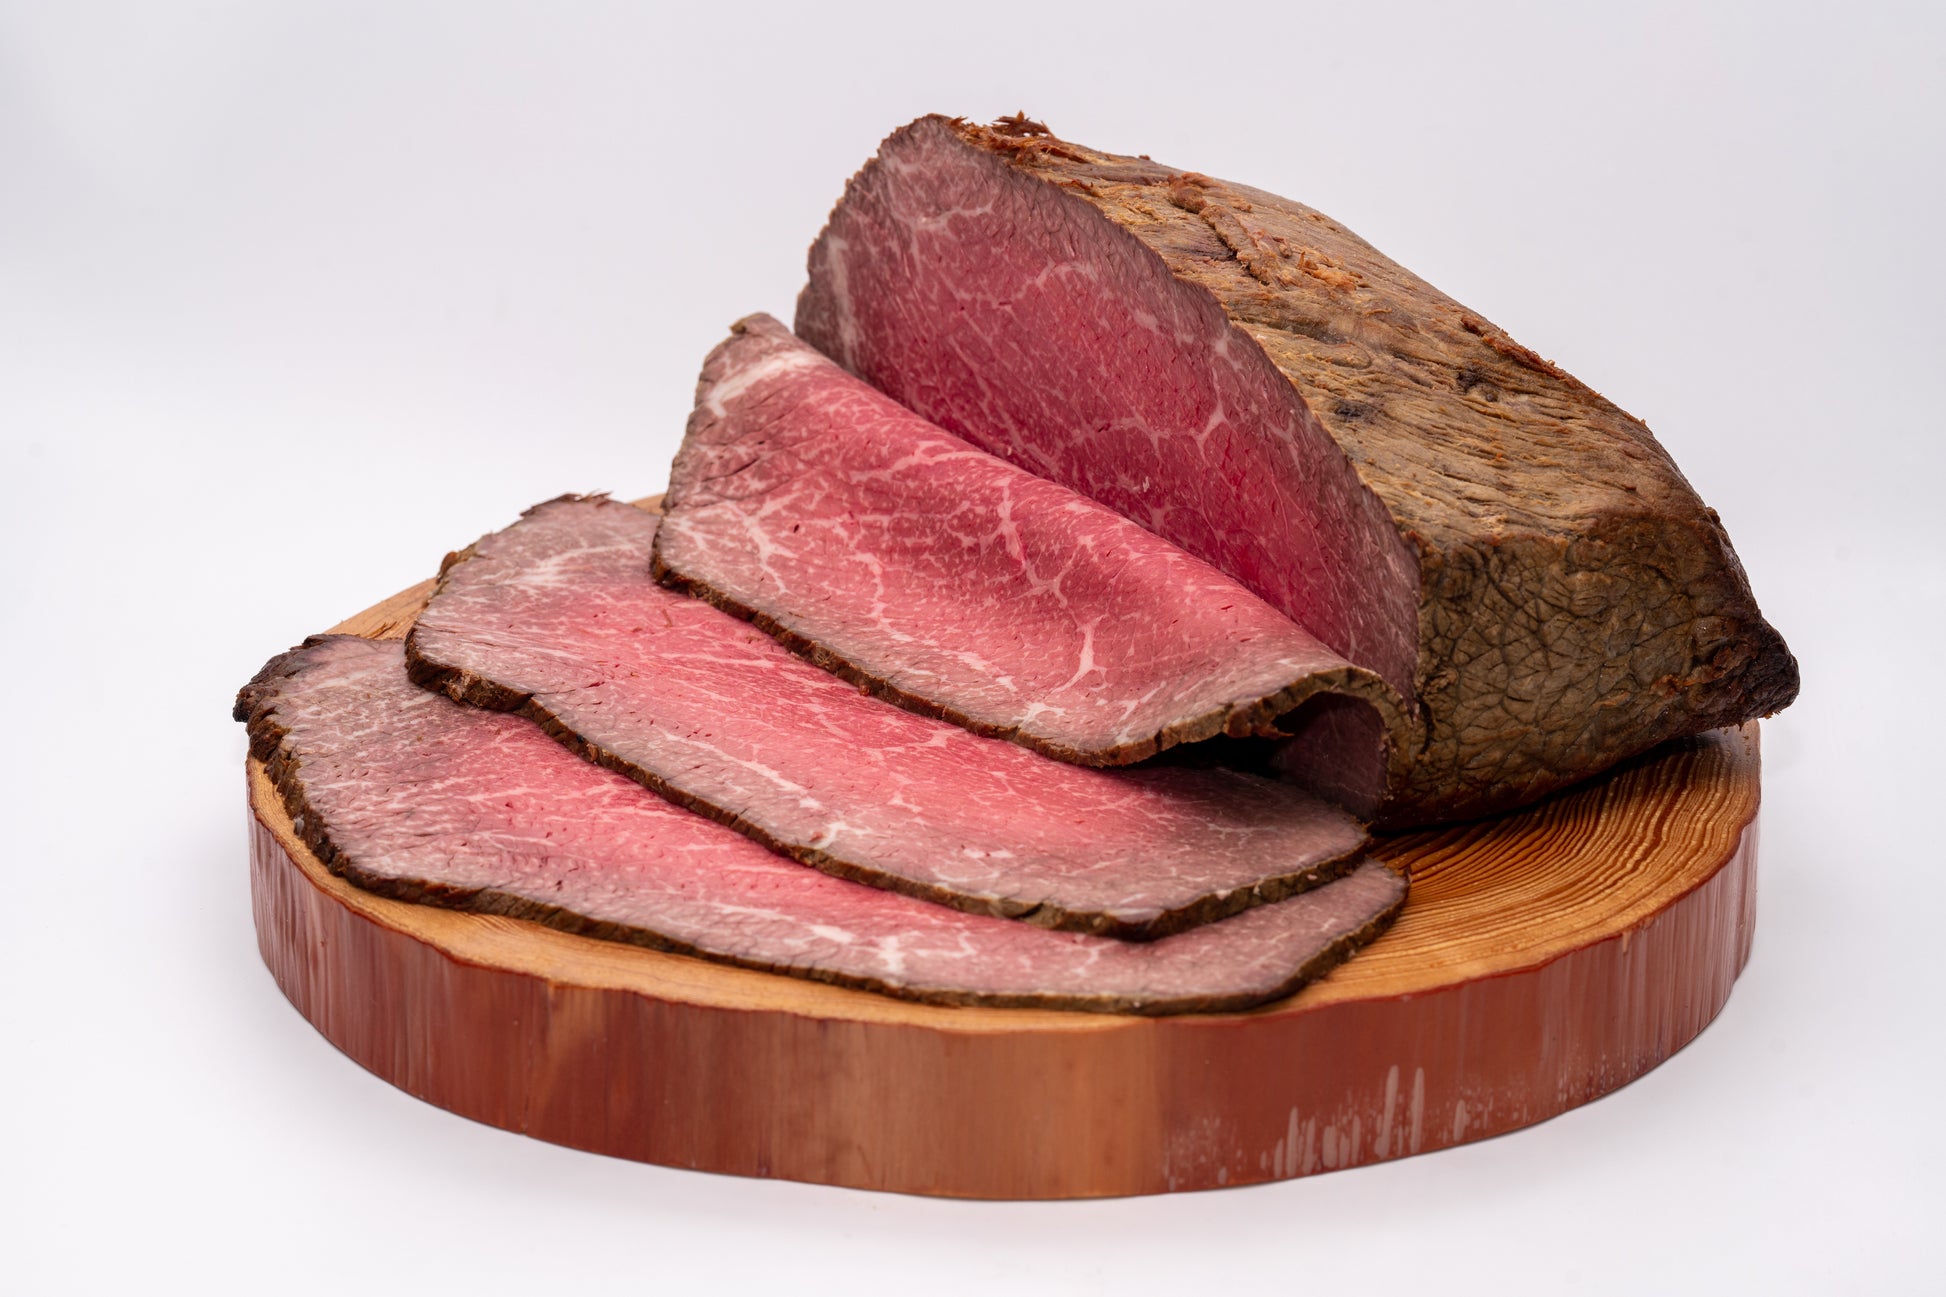  赤身が美しいあか牛モモ肉を使用。  肉本来の旨さを十分に味わうことができる、こだわりのローストビーフです。じっくりとローストした肉は、しっとり柔らかく噛むたびに旨味が広がります